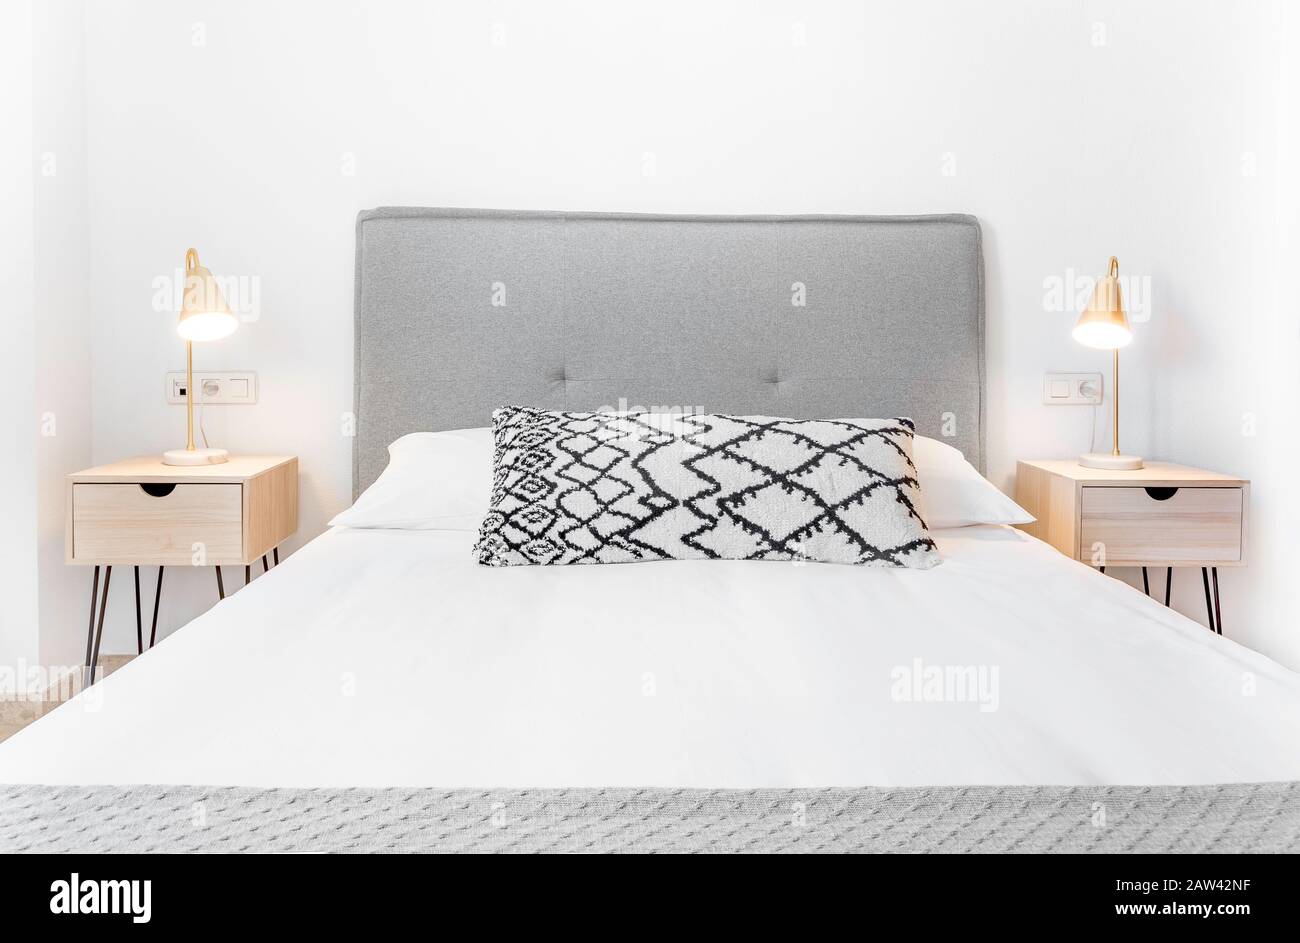 Komfortables Hotelzimmer mit Filzkopfteil mit Naturstoffkissen, Metalllampen, Nachttisch aus Holz und einem großen Kissen.Holiday Destination Apartment Stockfoto